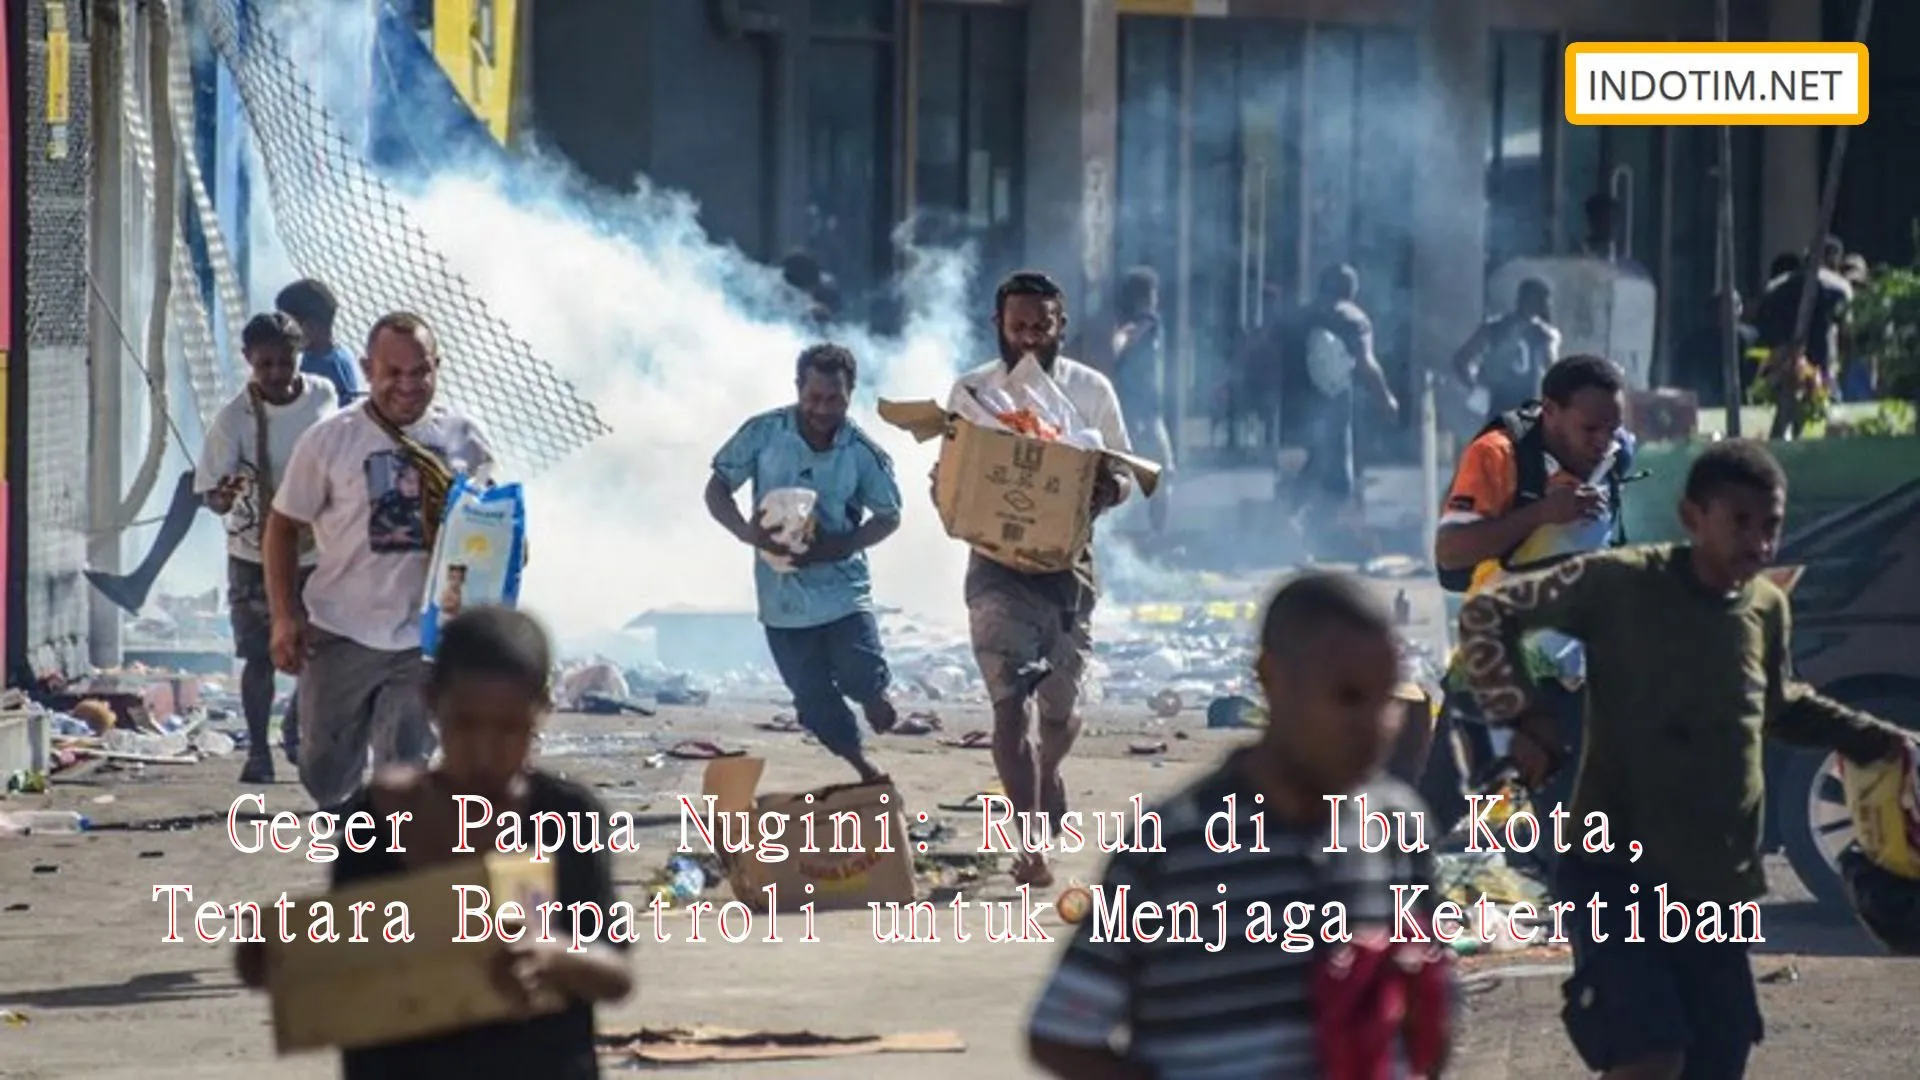 Geger Papua Nugini: Rusuh di Ibu Kota, Tentara Berpatroli untuk Menjaga Ketertiban